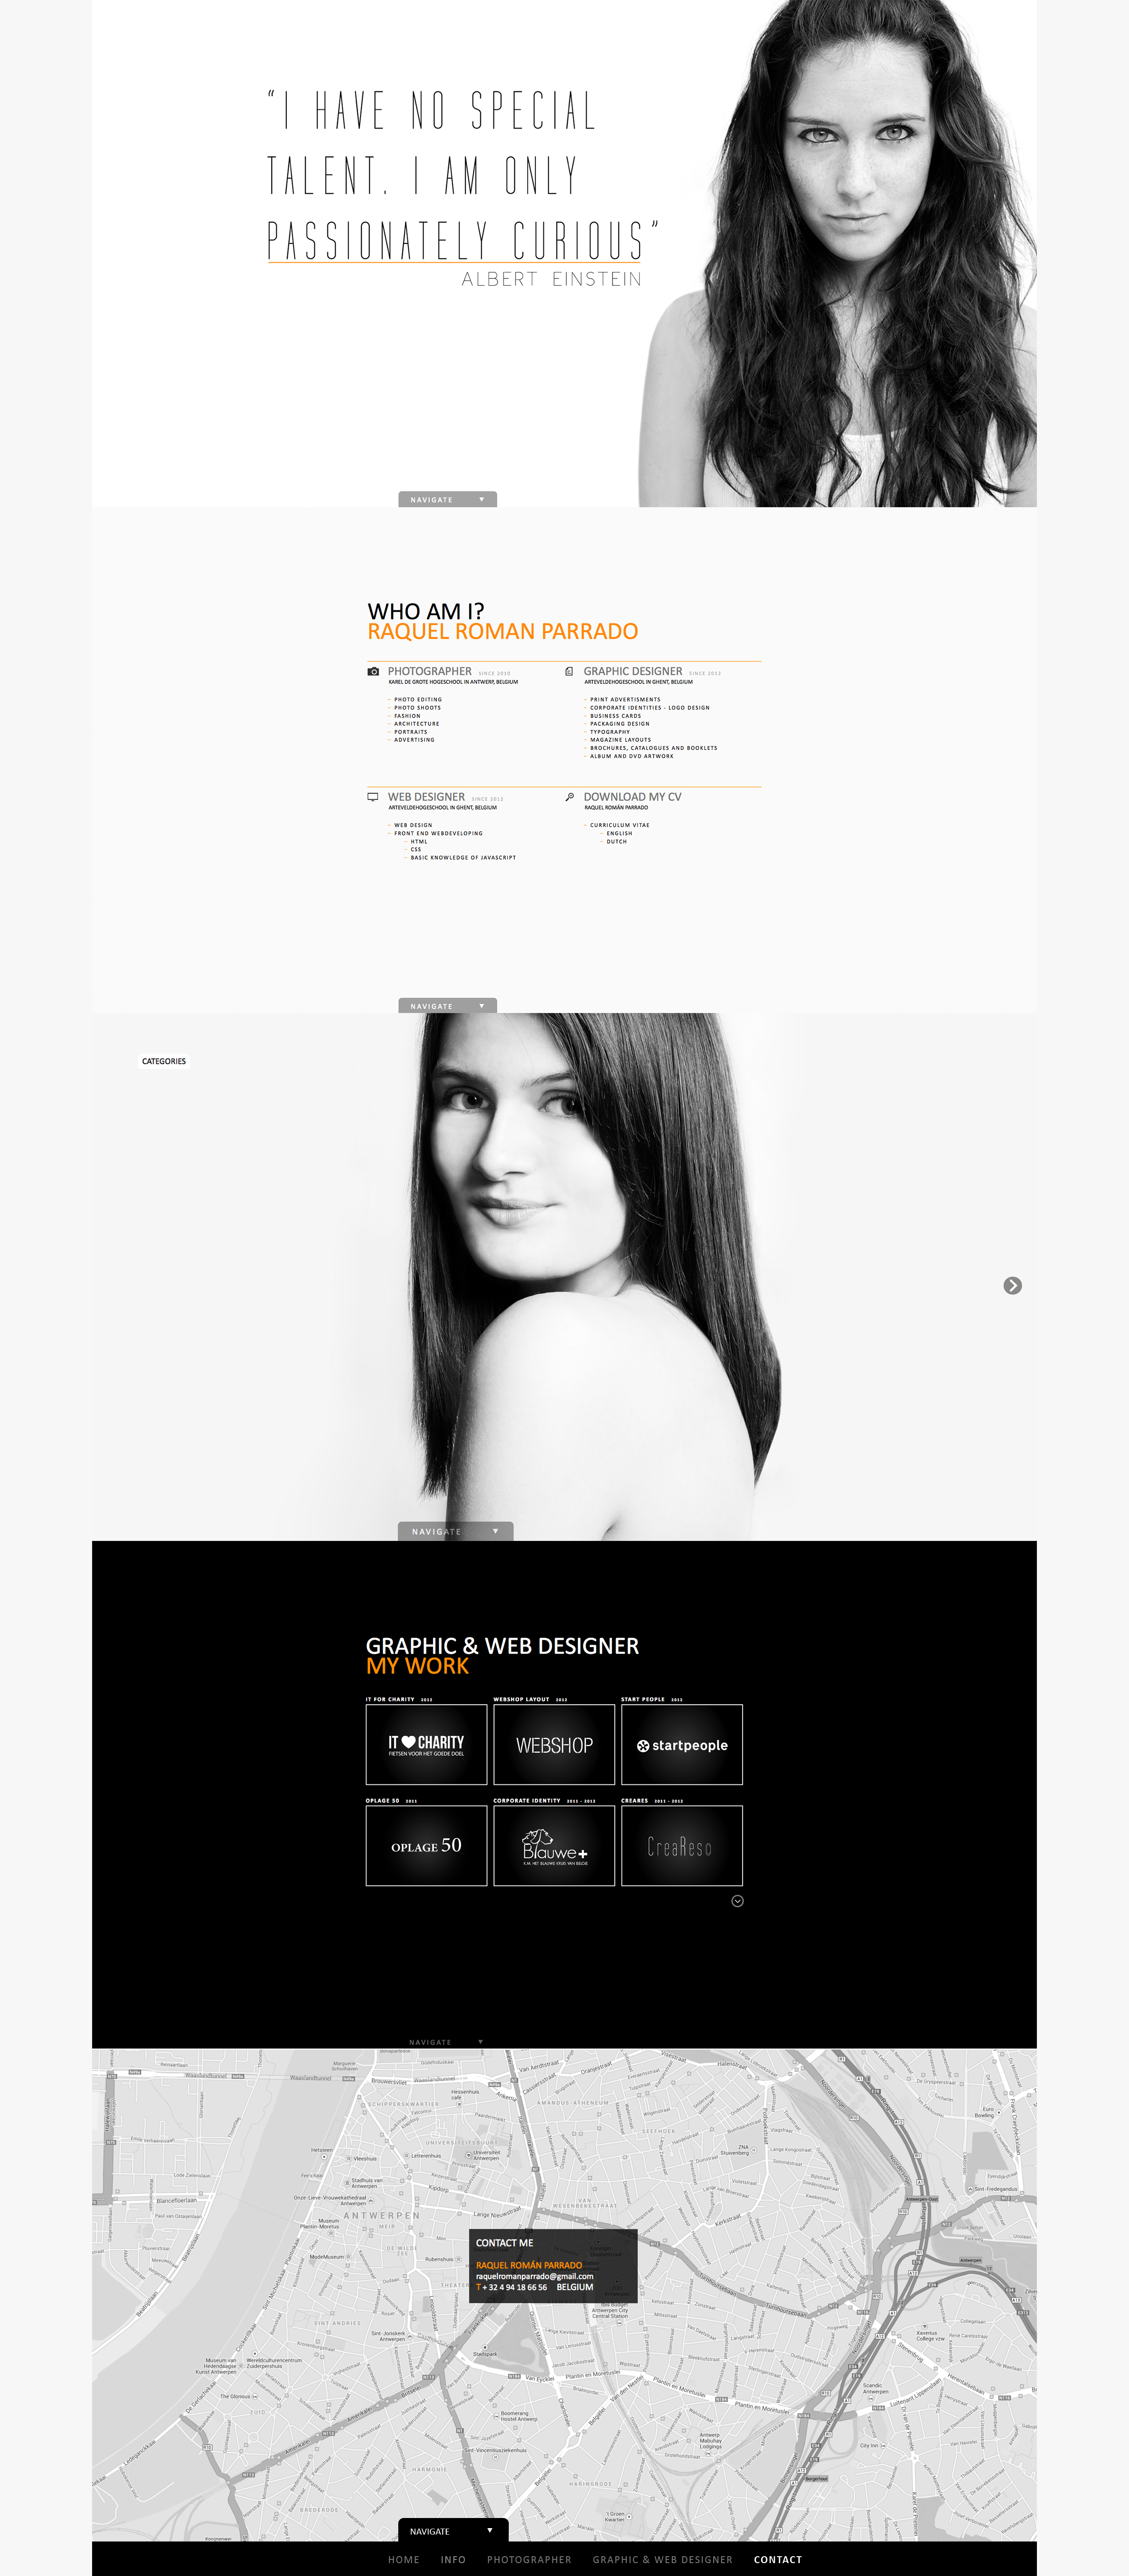 Prevous website portfoliio Raquel Roman Parrado - portfolio - website